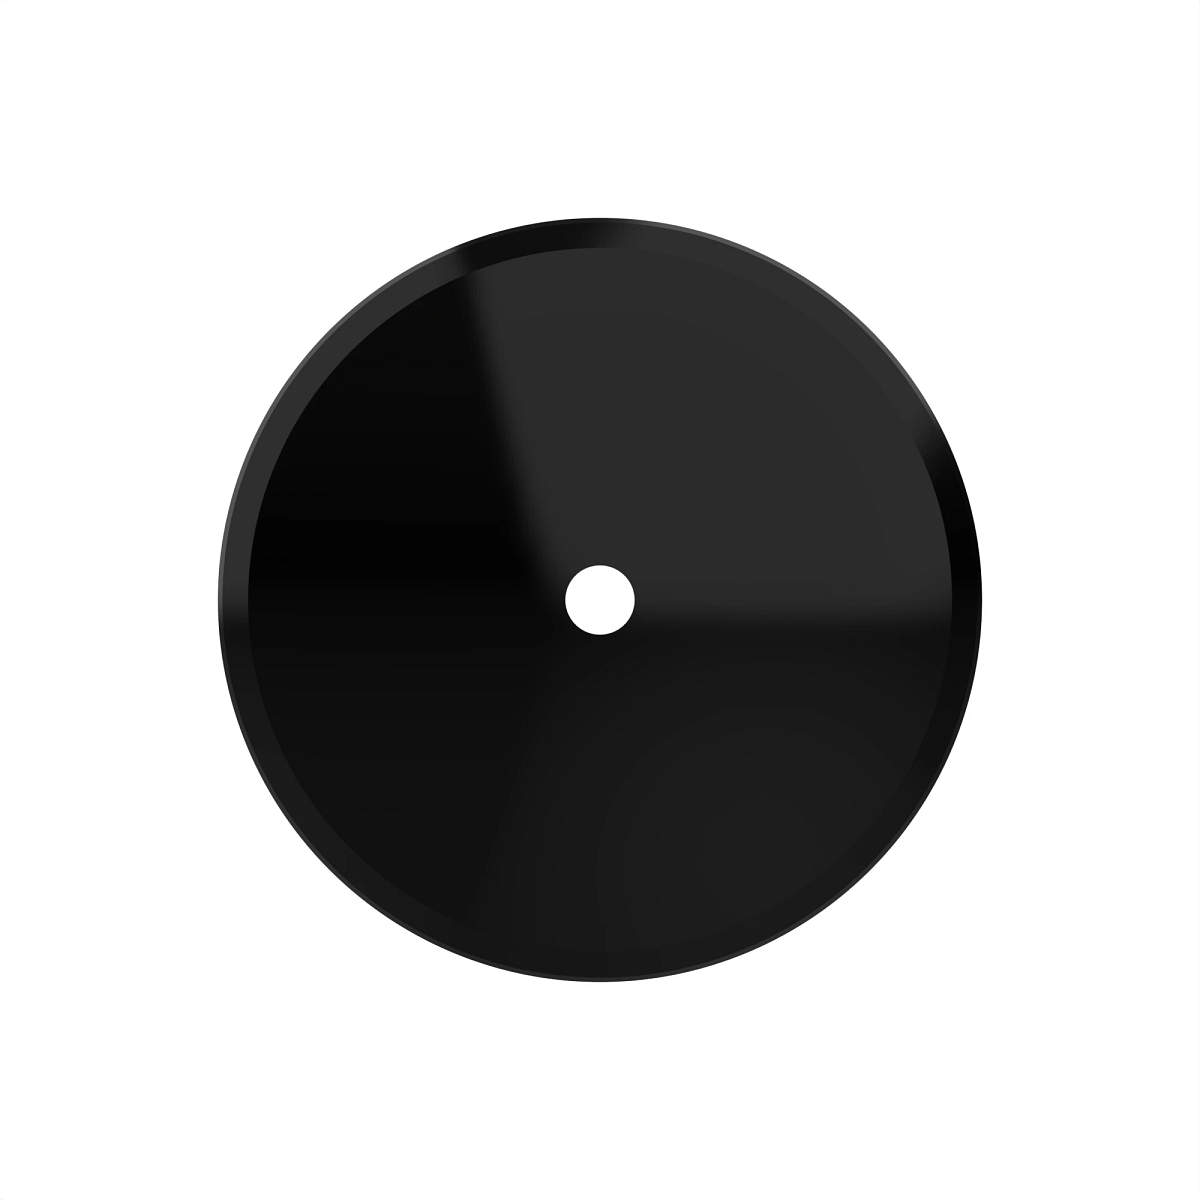 N242998: John Deere Solid Spherical Disc Blade